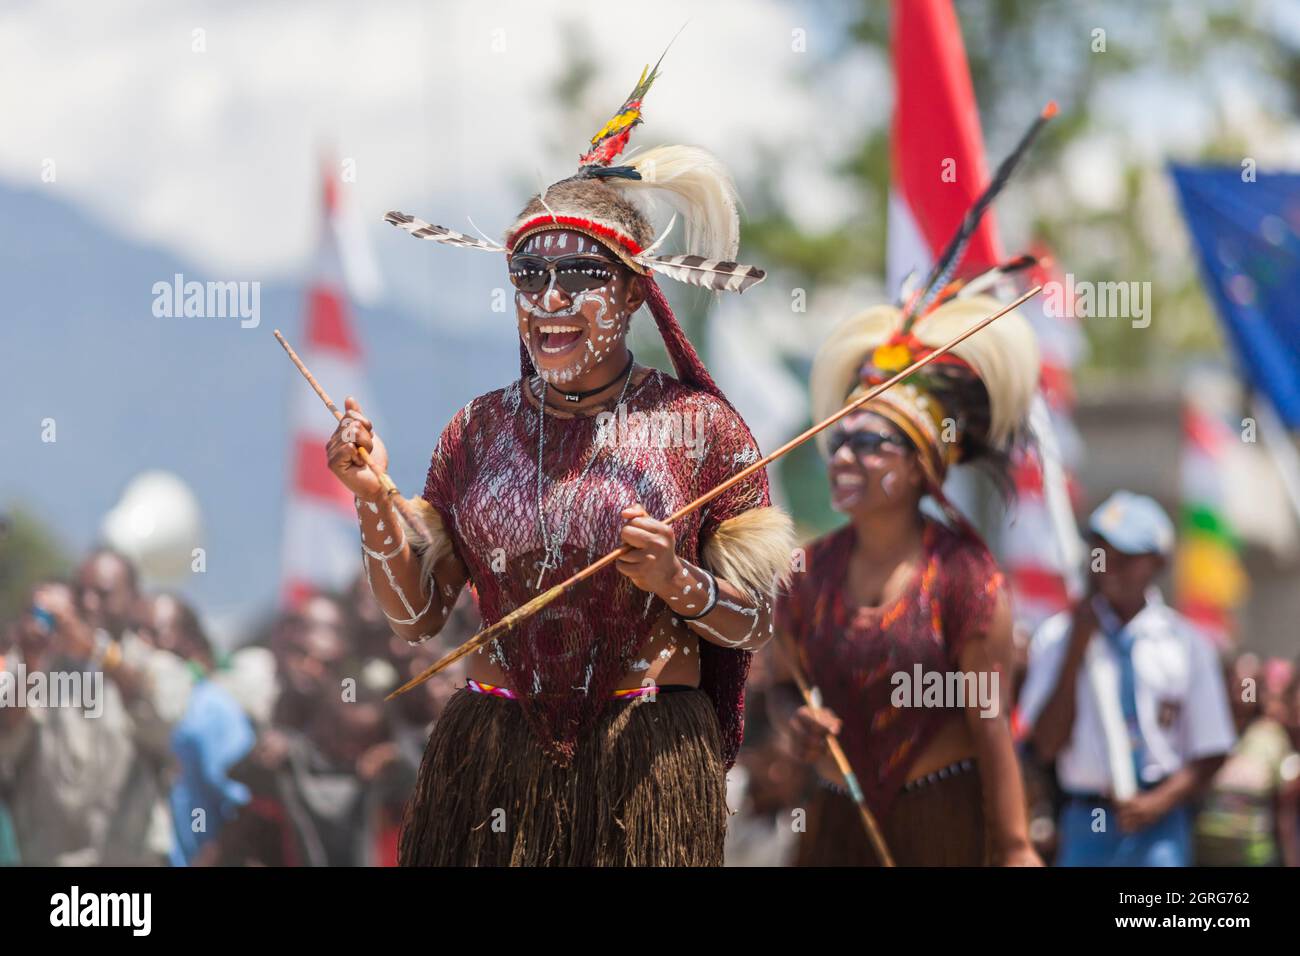 Indonesien, Papua, das Stadtzentrum von Wamena, junge Frauen aus dem Dani-Stamm, Feier des Unabhängigkeitstages Indonesiens. Jeder Stamm ist eingeladen, mit der indonesischen Flagge zu marschieren und seine Kultur durch traditionelle Tänze und Kleidung zu zeigen, um das Gefühl kultureller Freiheit zu stärken. Stockfoto